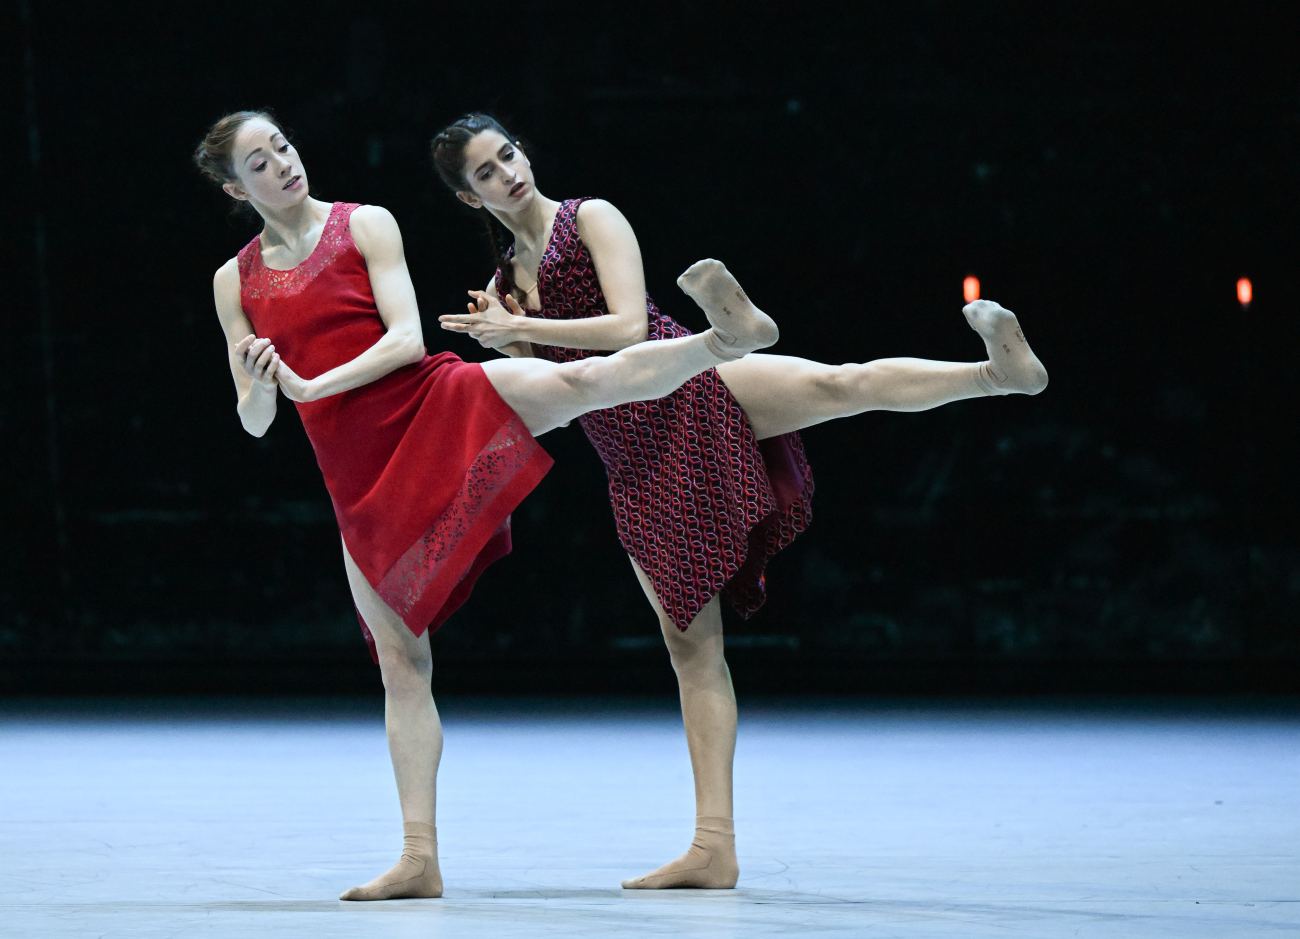 2. A.Zuccarini and V.Girelli, “Bliss” by J.Inger, Stuttgart Ballet 2022 © Stuttgart Ballet